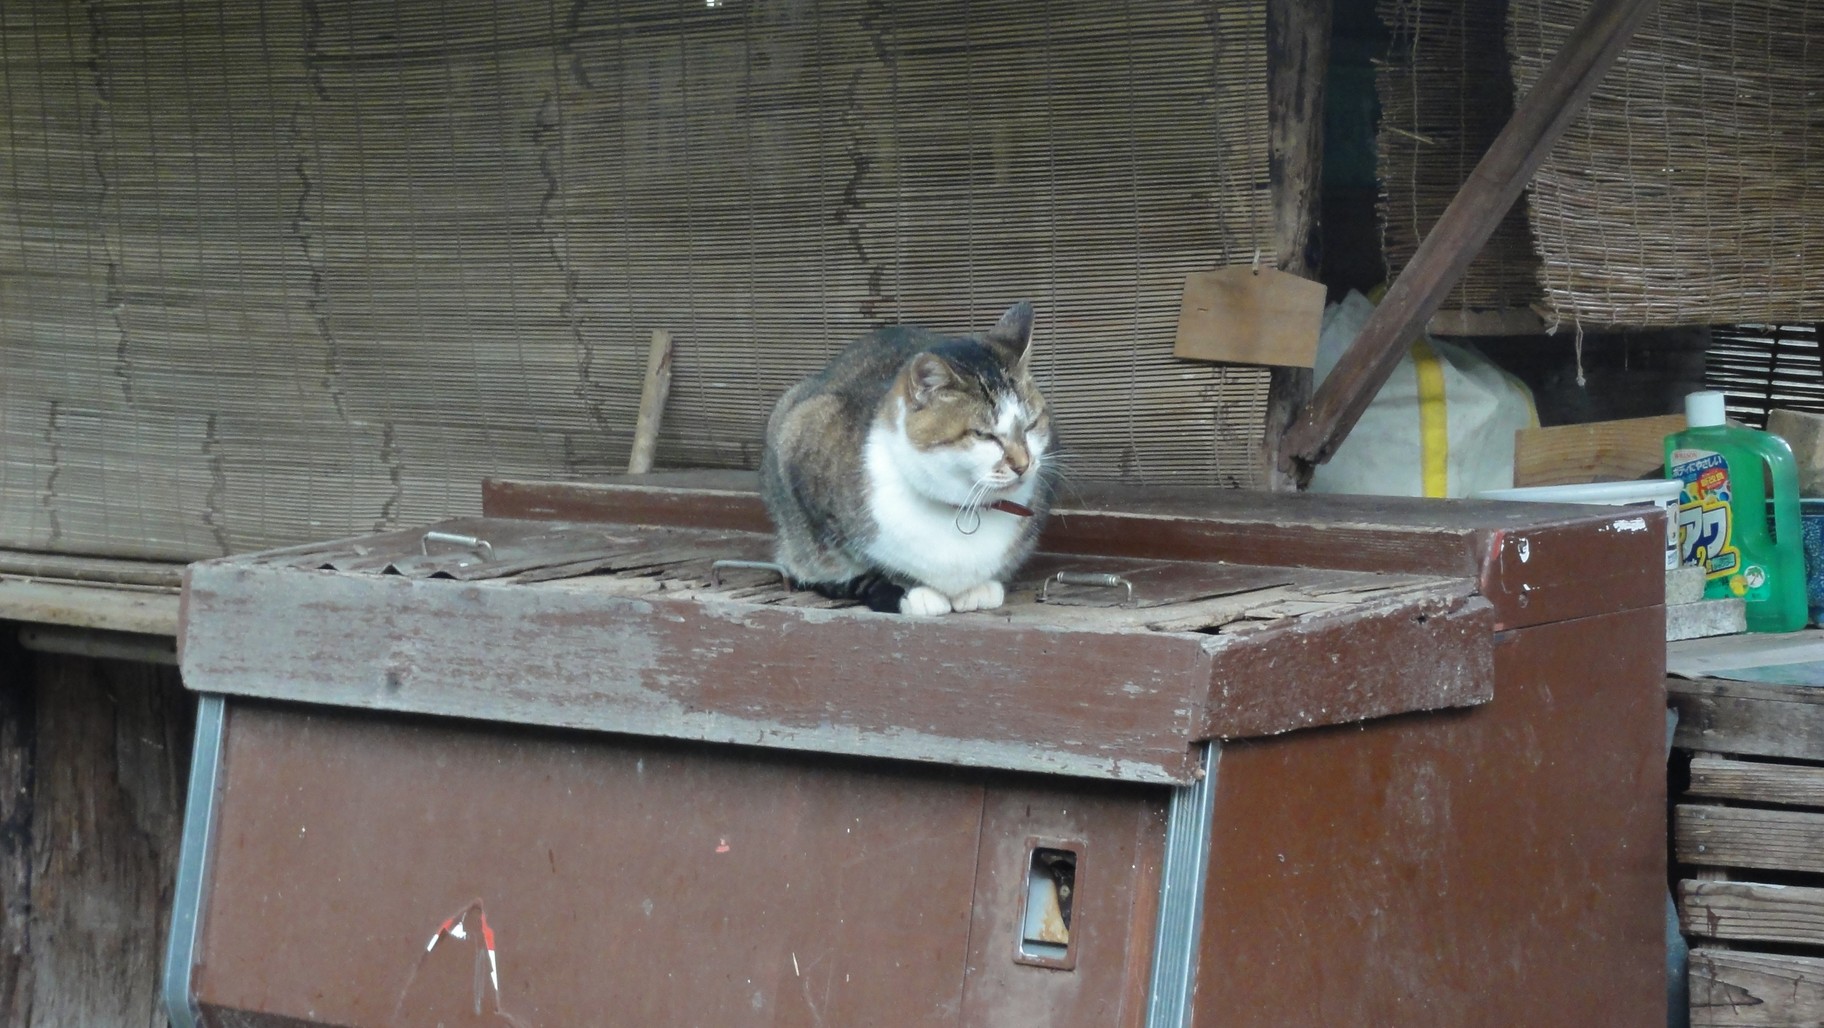 嵐山公園展望台路旁的貓